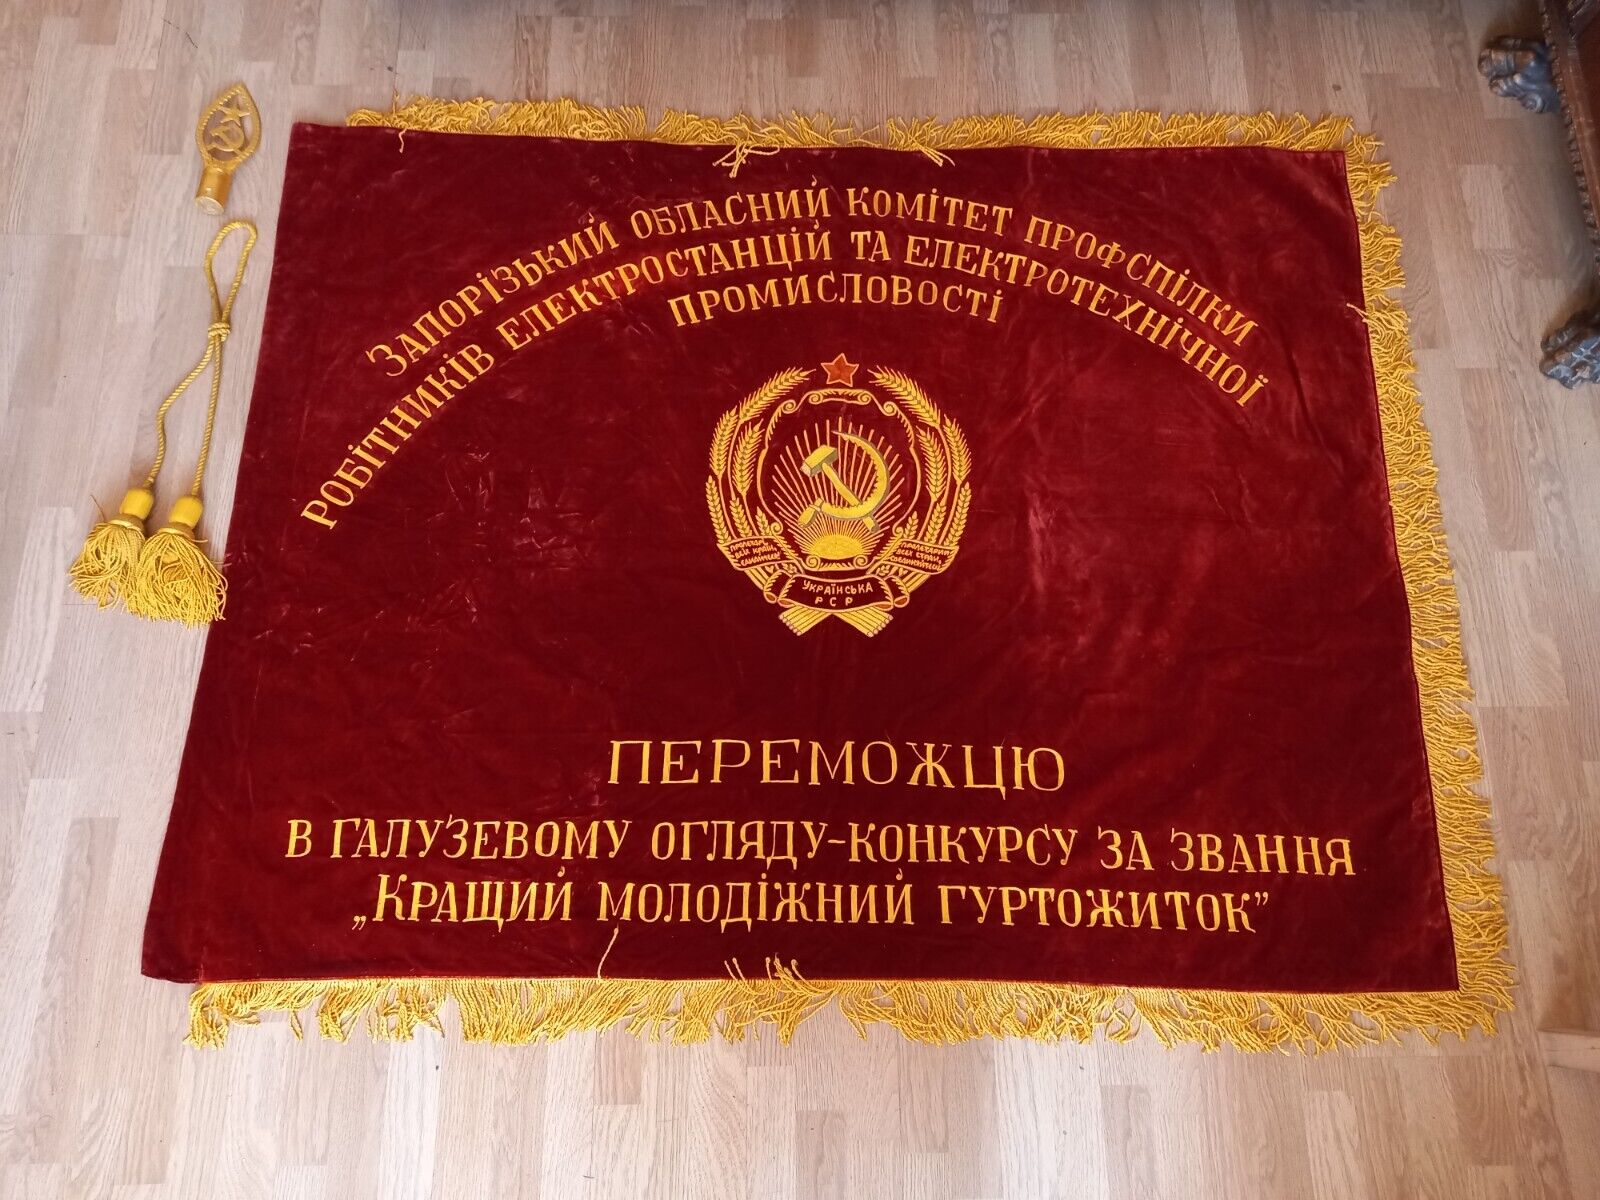 The Grand velvet flag Ukrainian Soviet Socialist Republic 1950-60s.